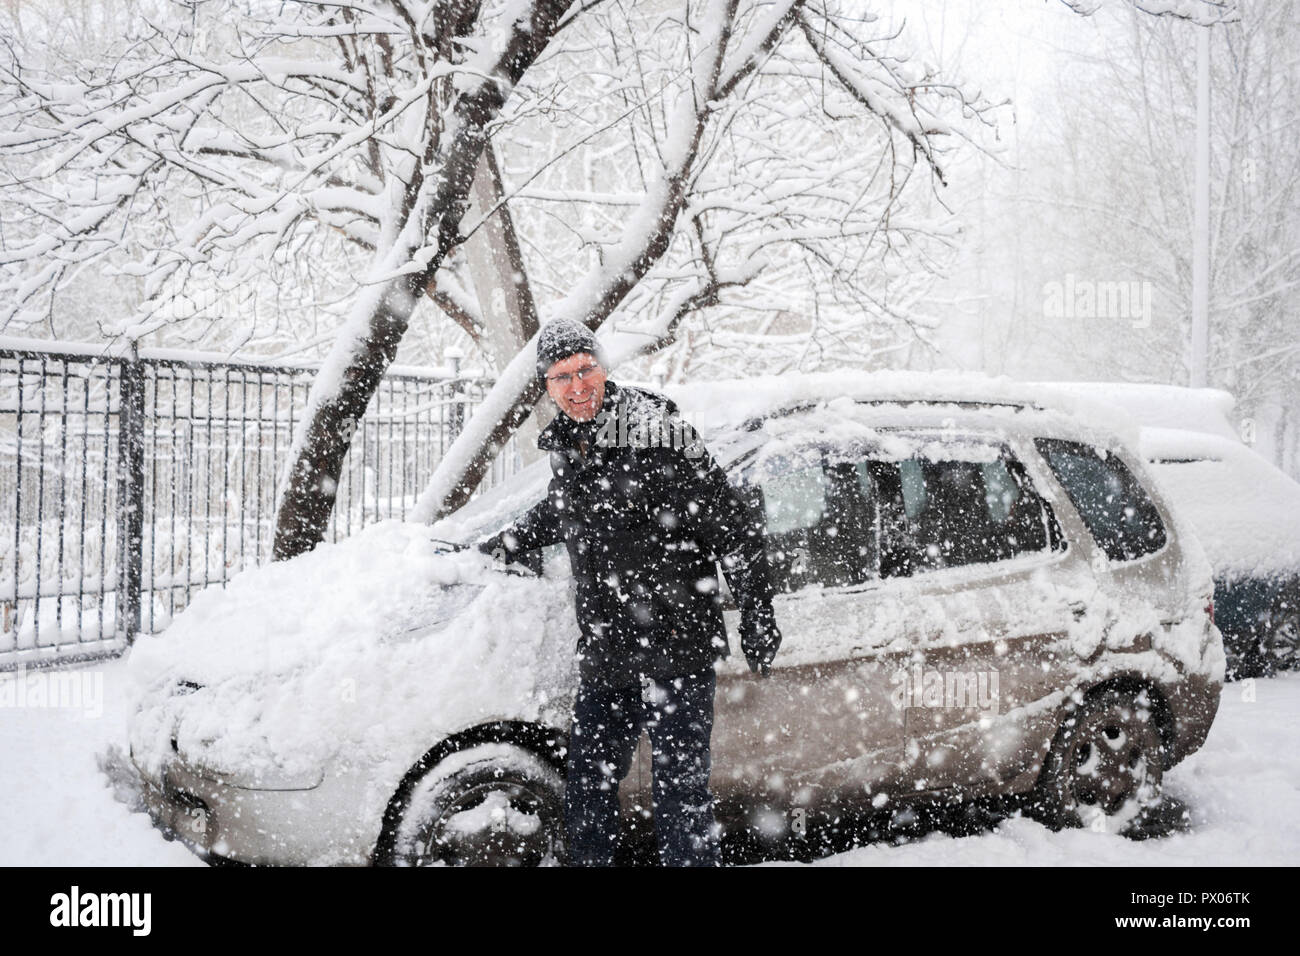 Freundlich lächelnden Mann putzt sein Auto und Kamera während starker Schneefall. Winter rauhes Wetter. Stockfoto